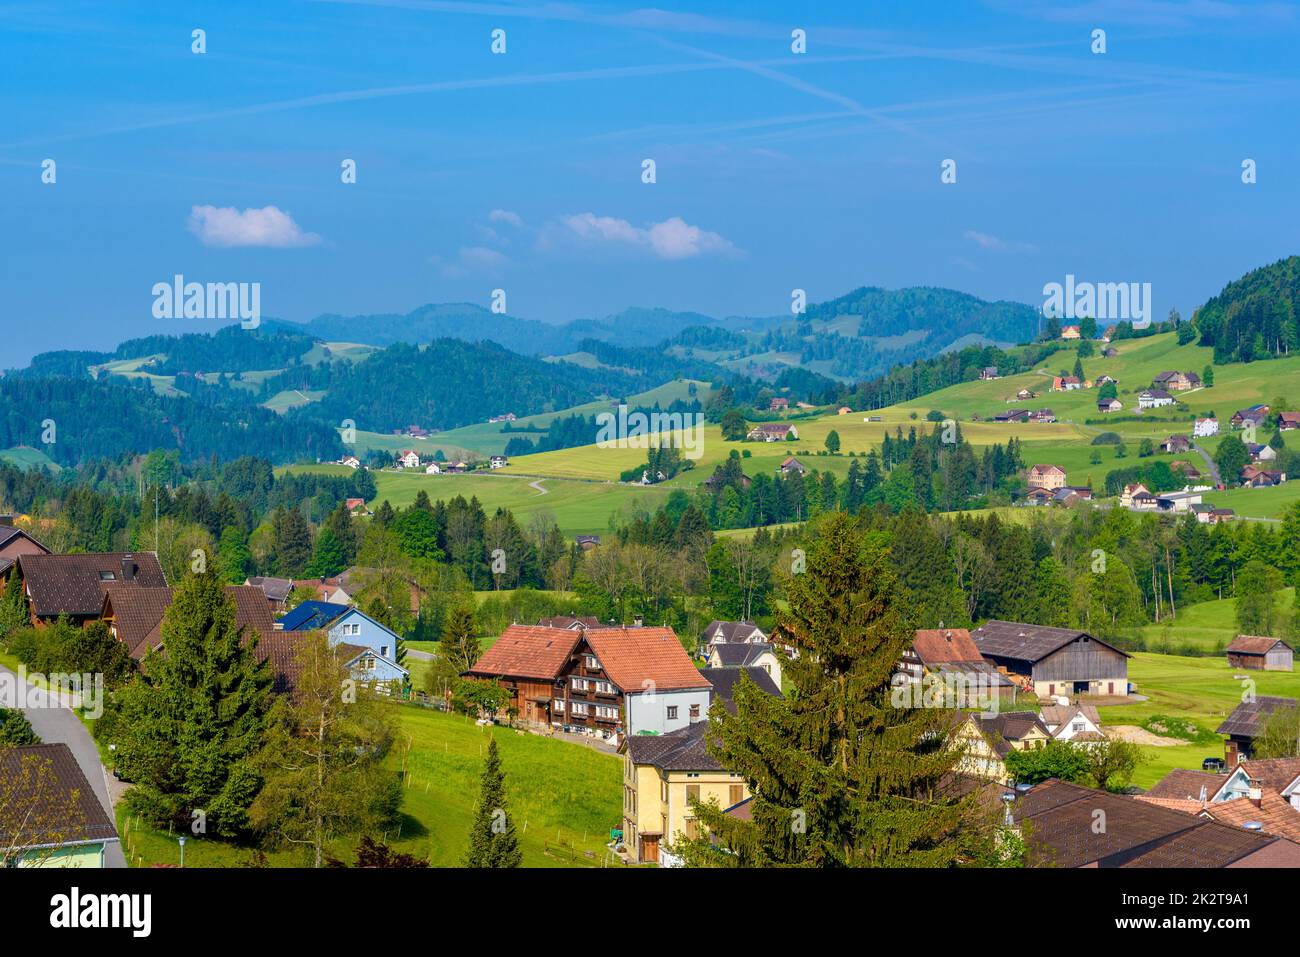 Village in Schoenengrund, Hinterland, Appenzell Ausserrhoden, Switz Stock Photo